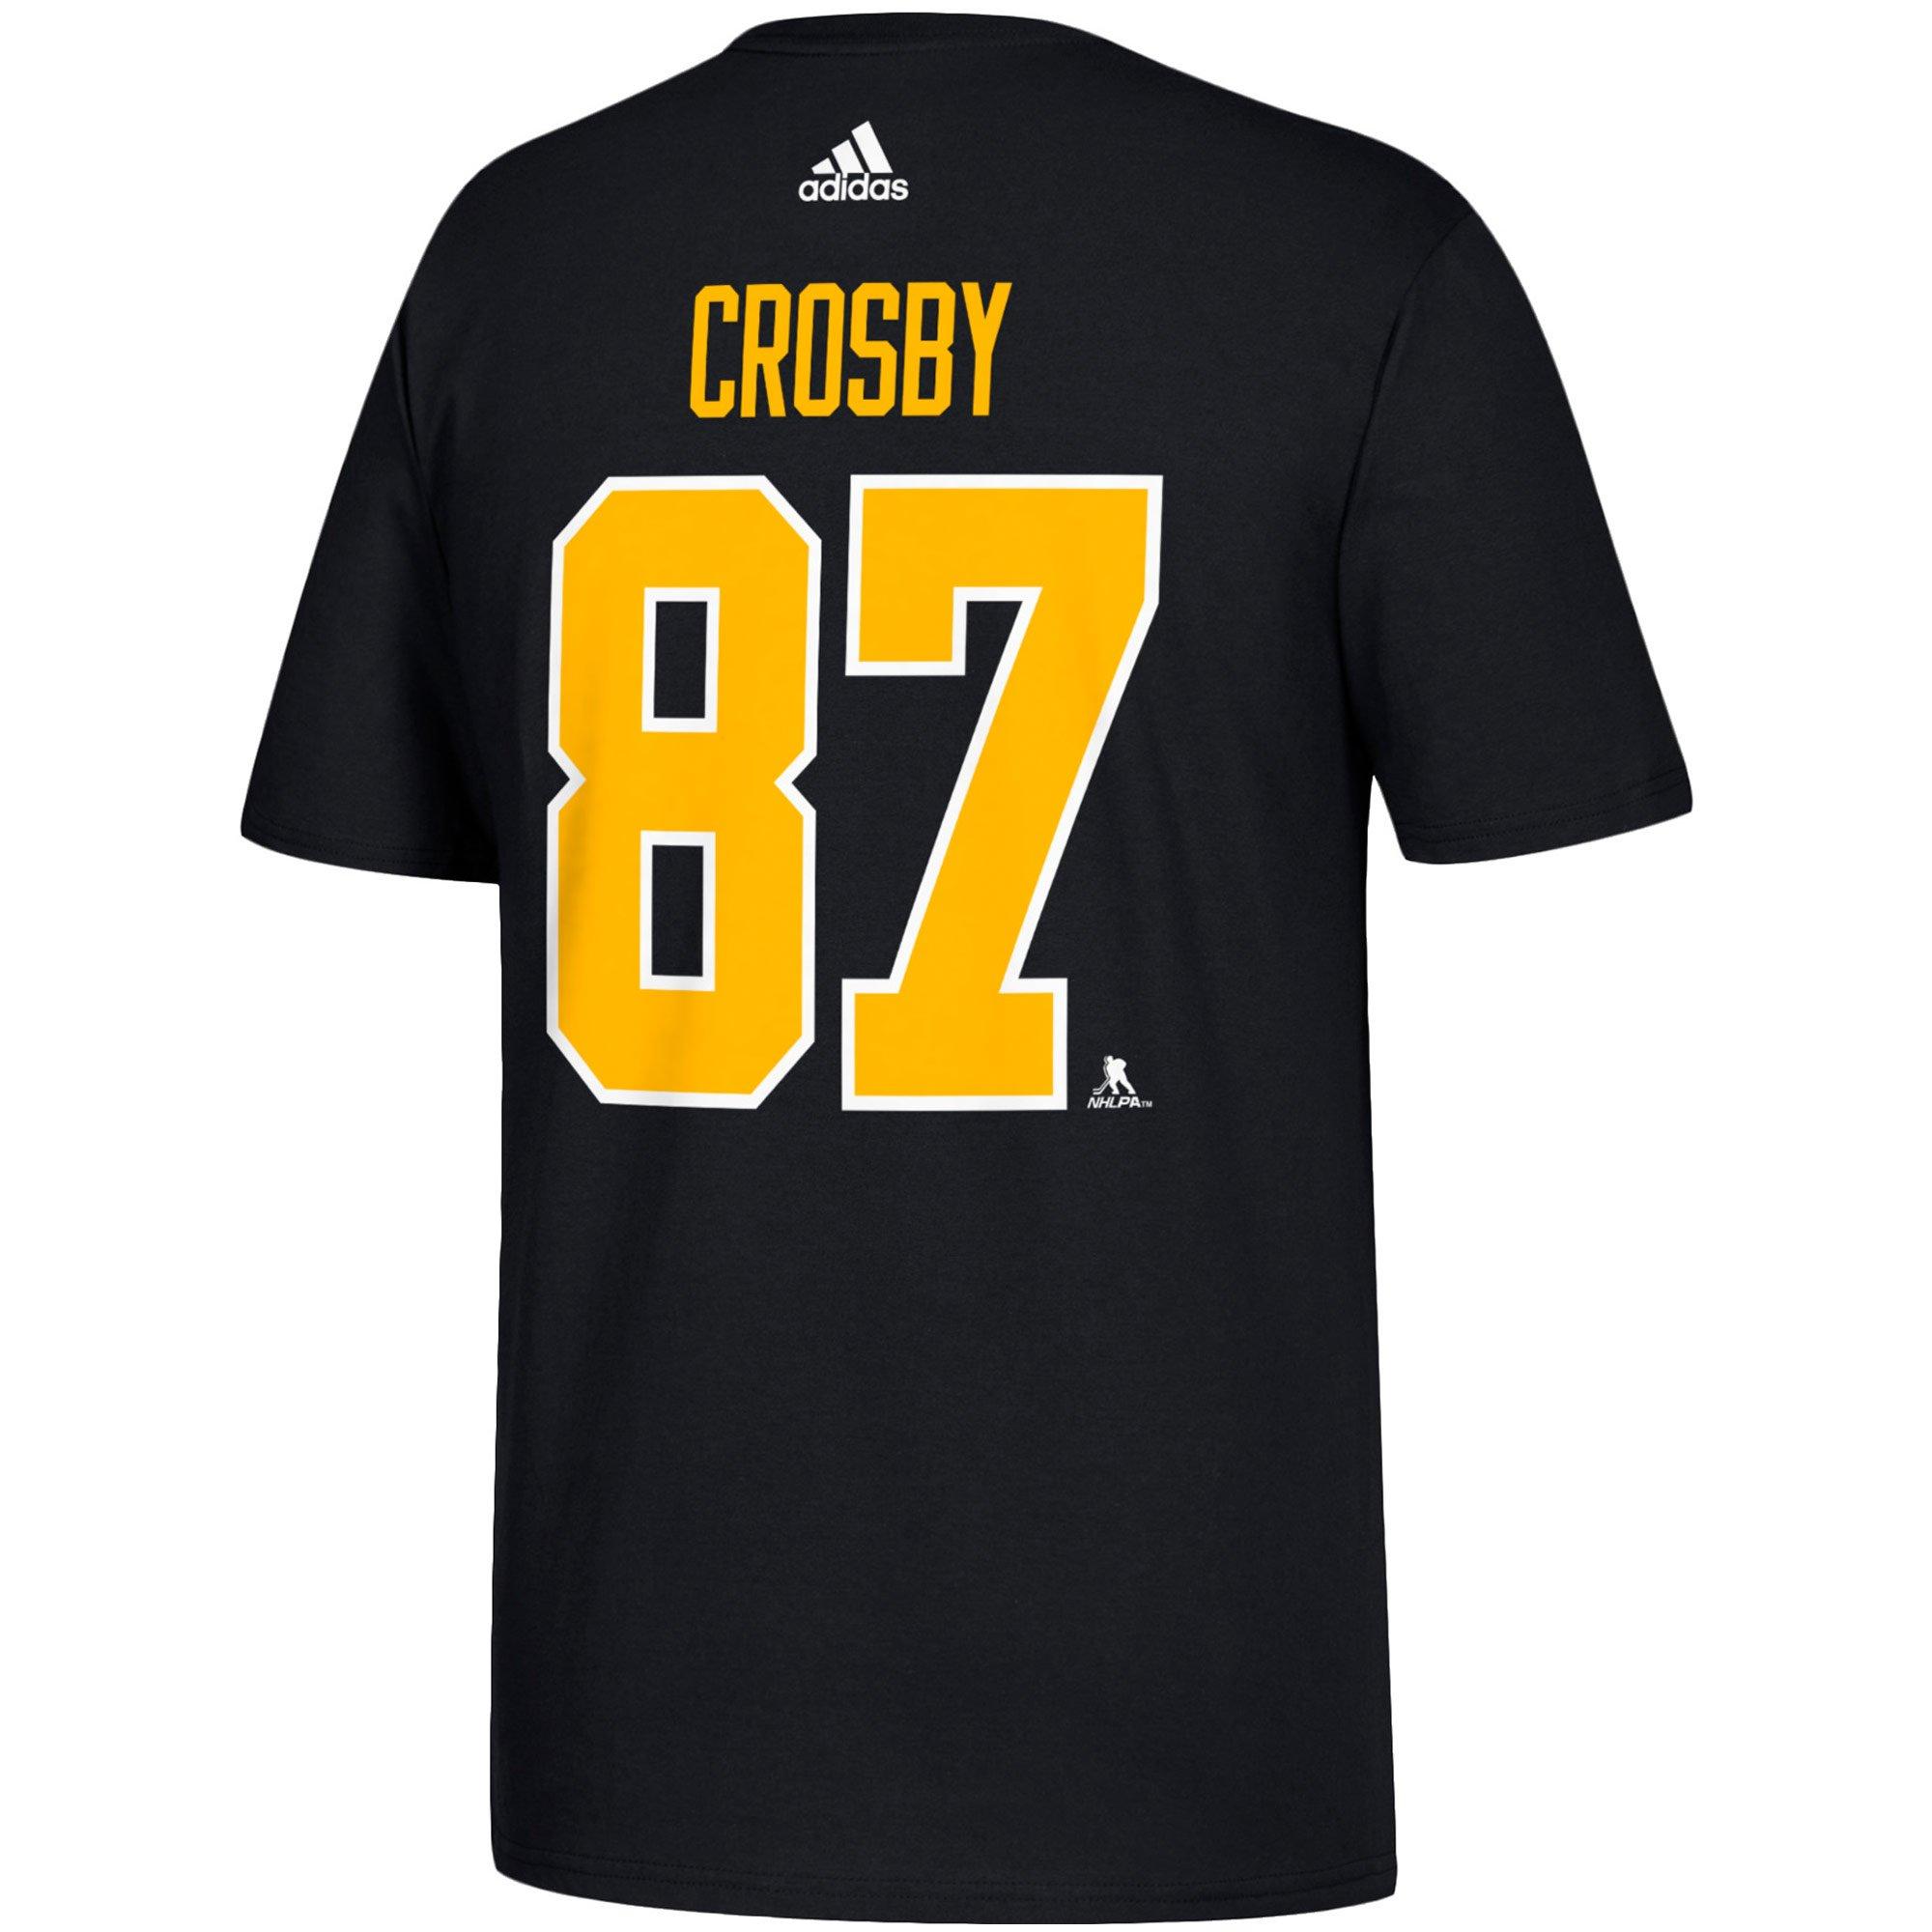 sidney crosby t shirt